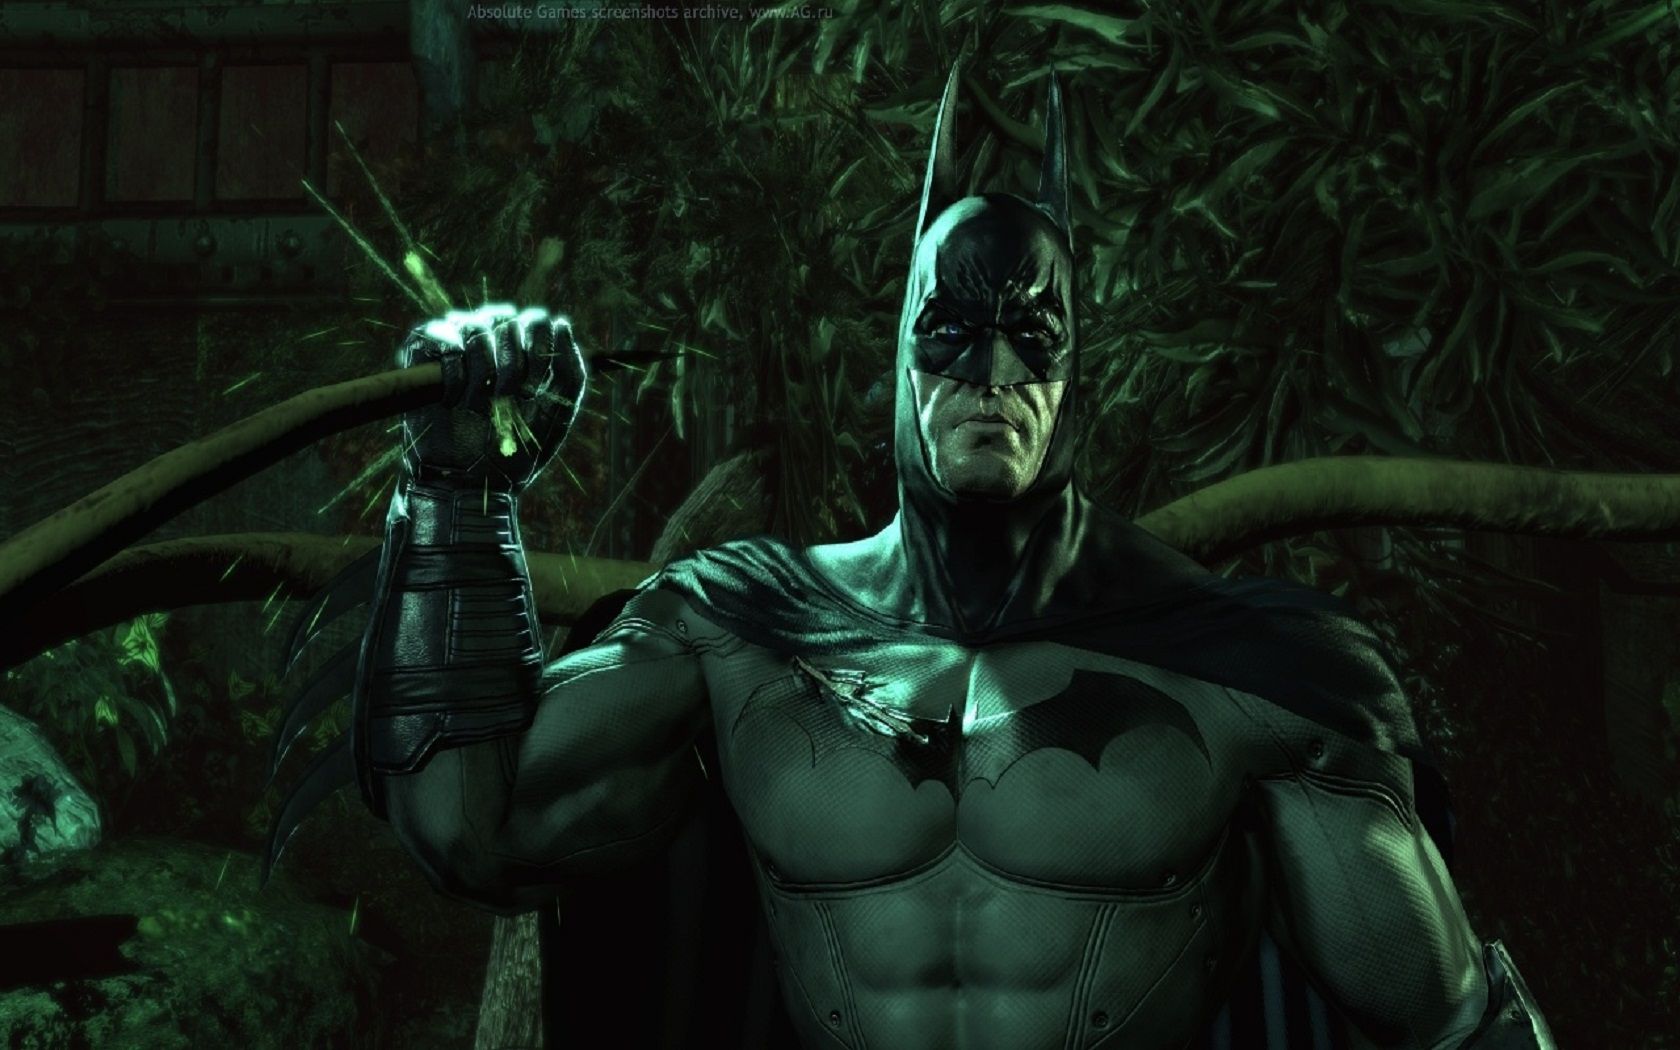 Бэтмен аркхам асайлум. Batman: Arkham Asylum. Бэтмен Аркхем асилум. Бэтмен асайлум. Бэтмен Аркхем асайлум.